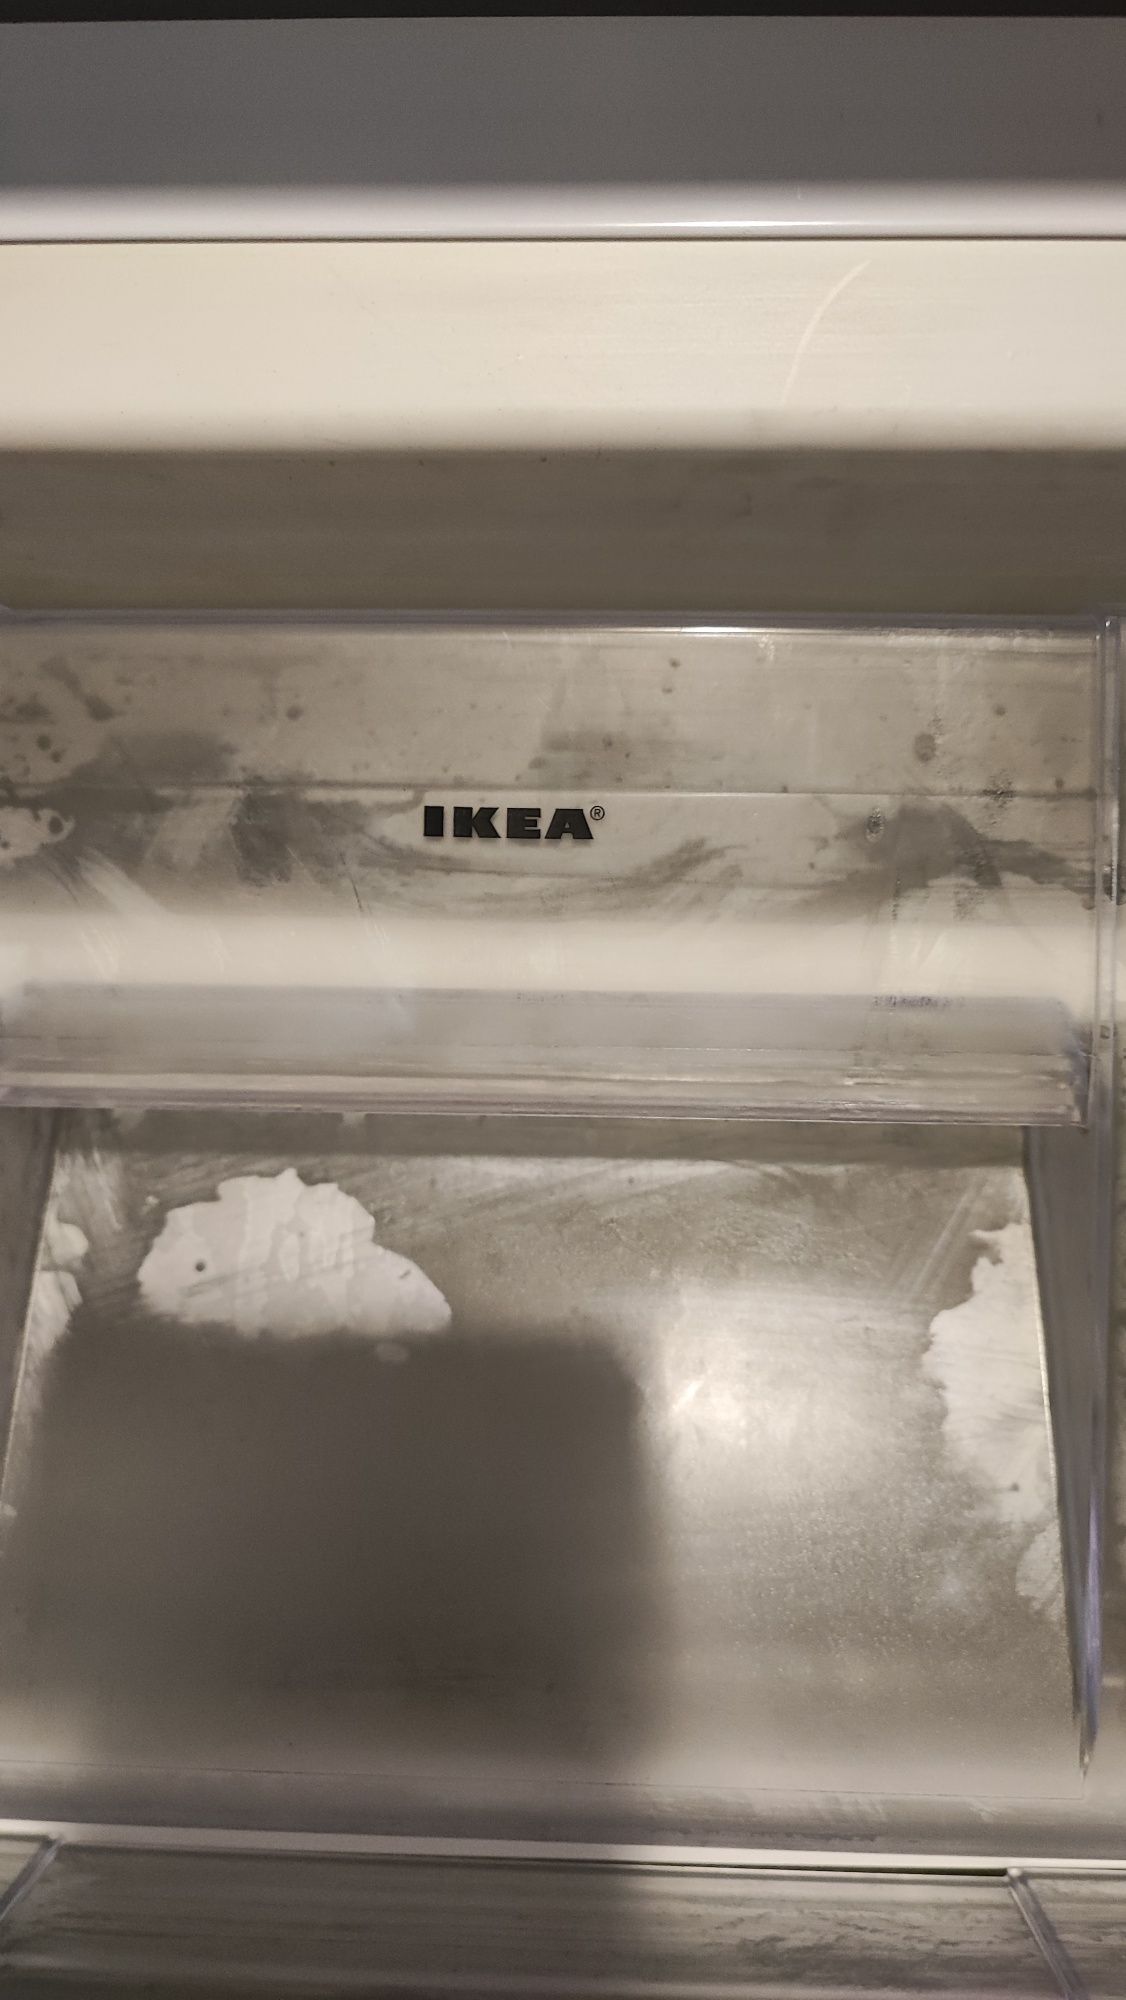 Congelator IKEA.